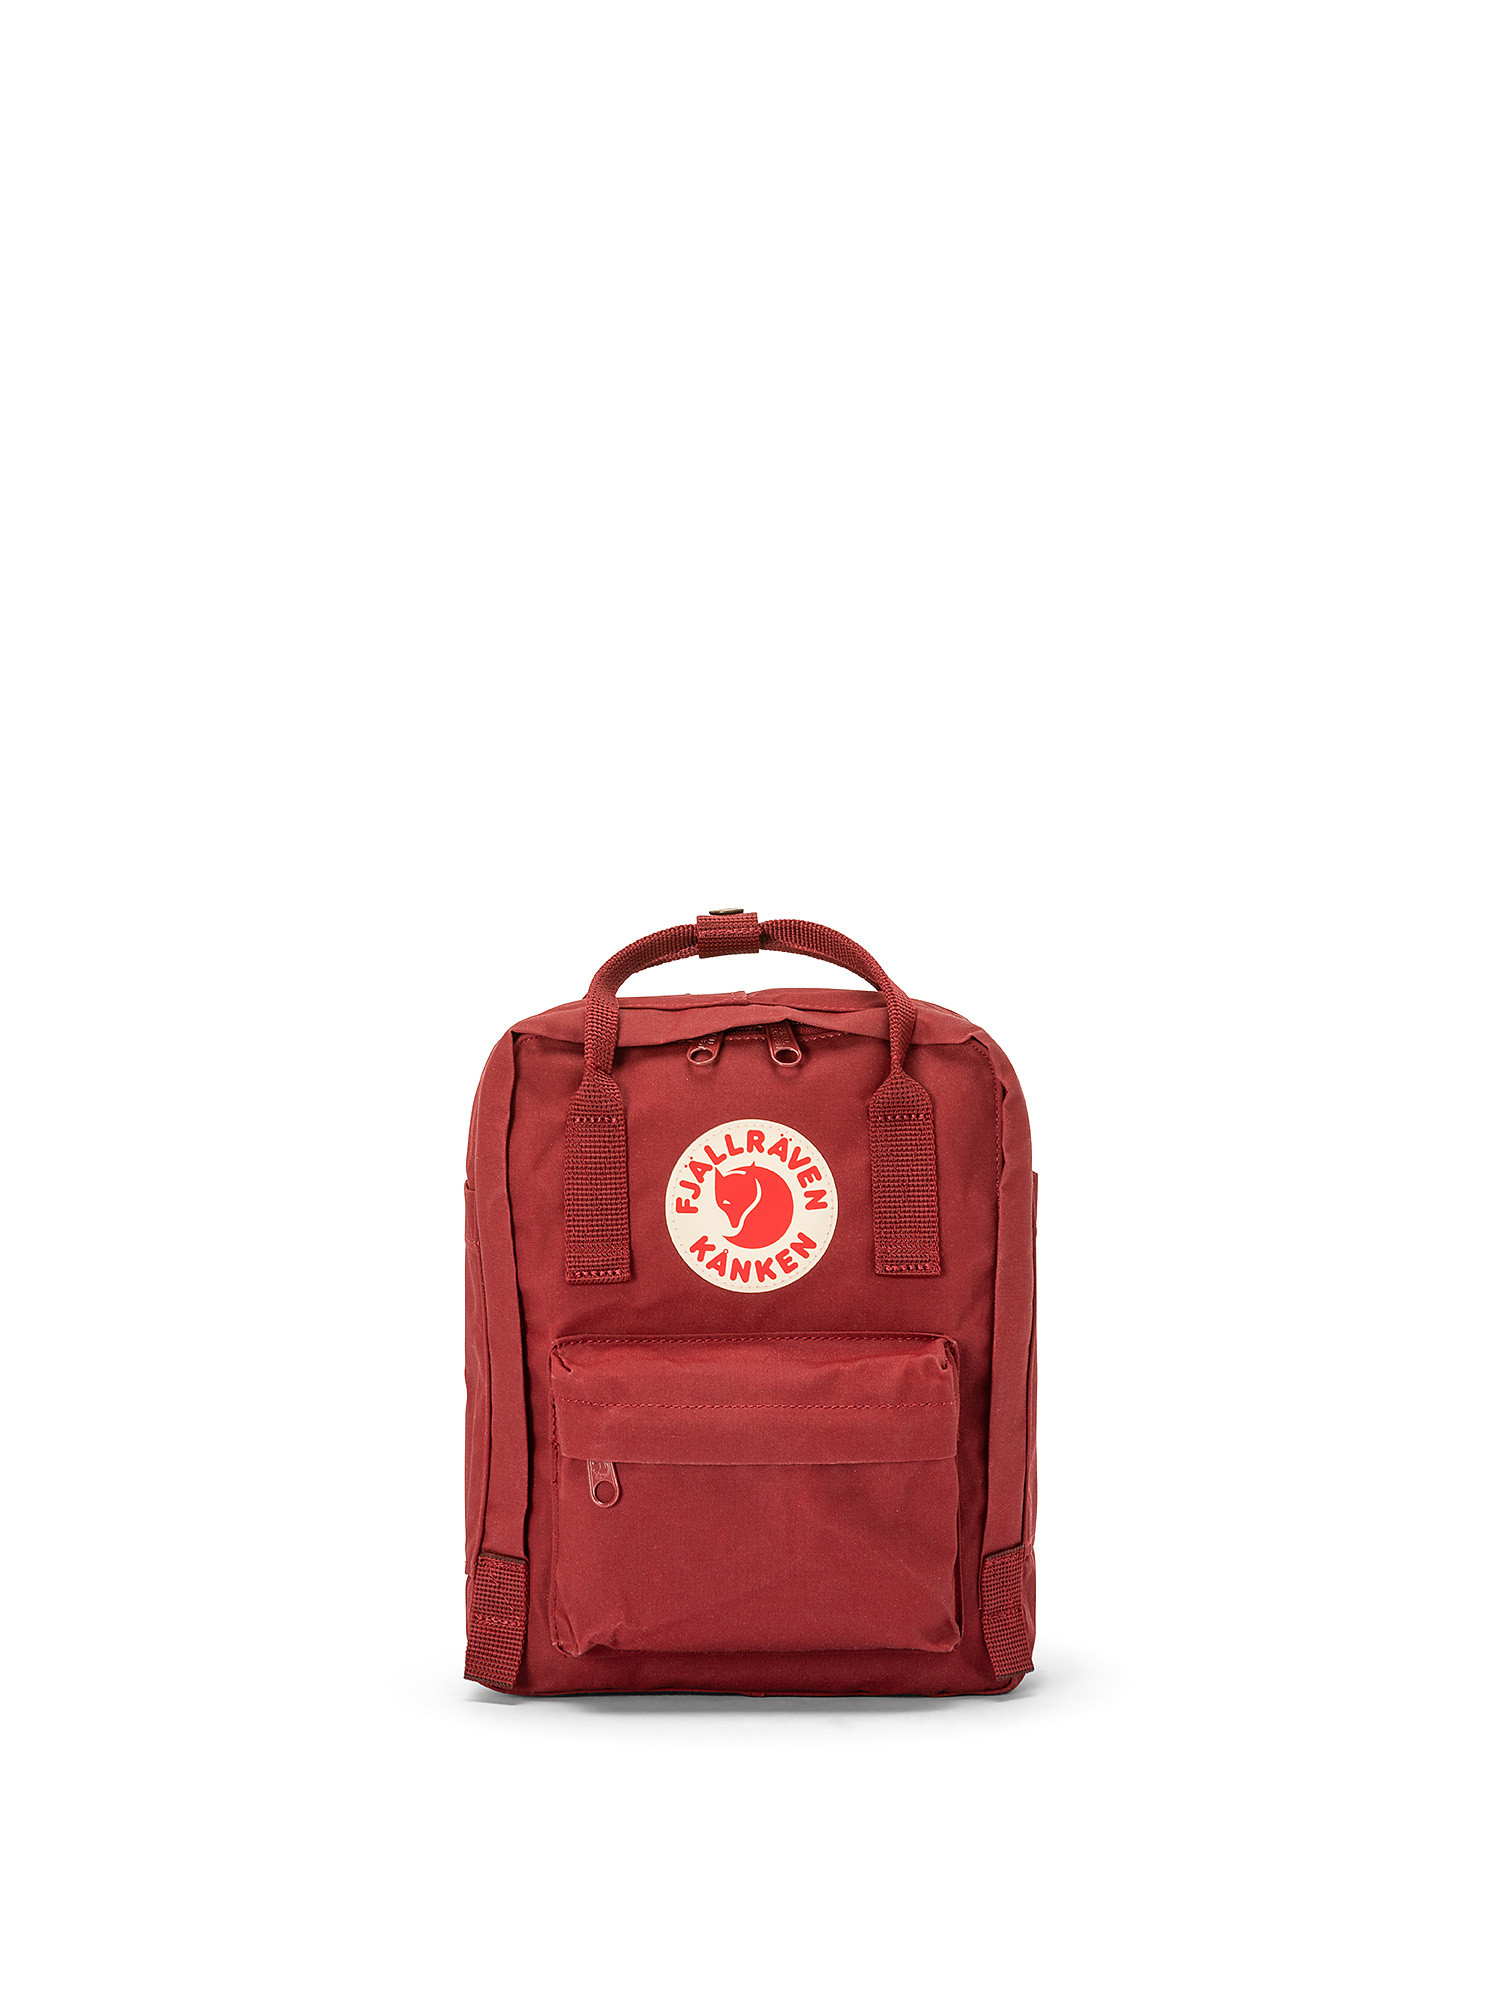 Kanken mini backpack, Red Bordeaux, large image number 0